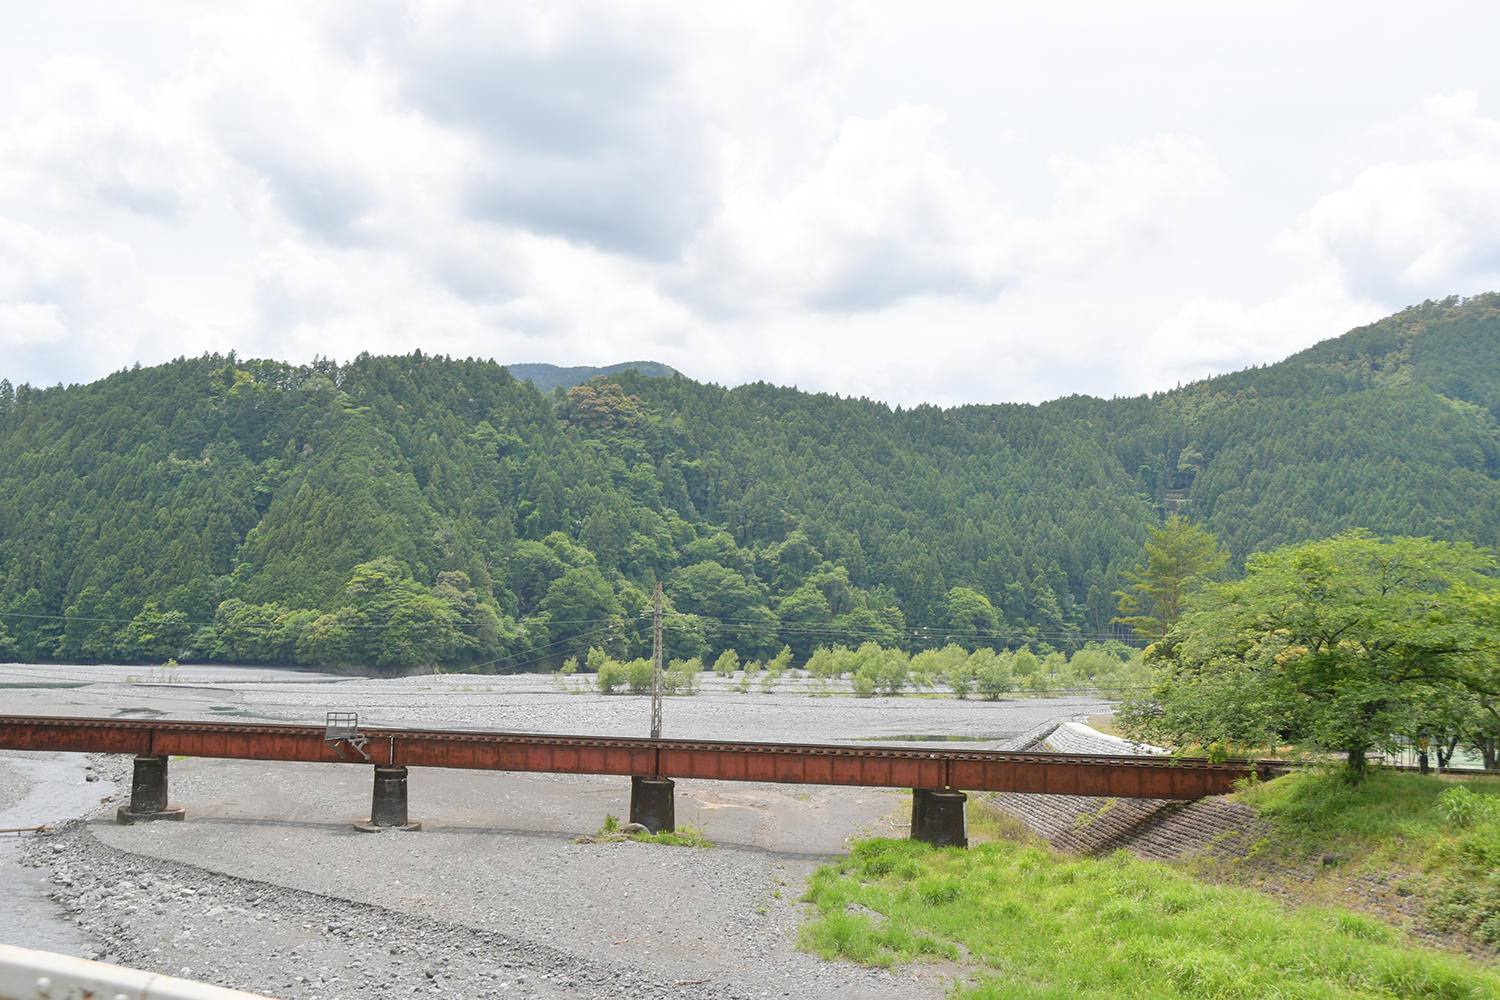 寸又峡方面を目指し、静岡県道77号川根寸又峡線を進みます。